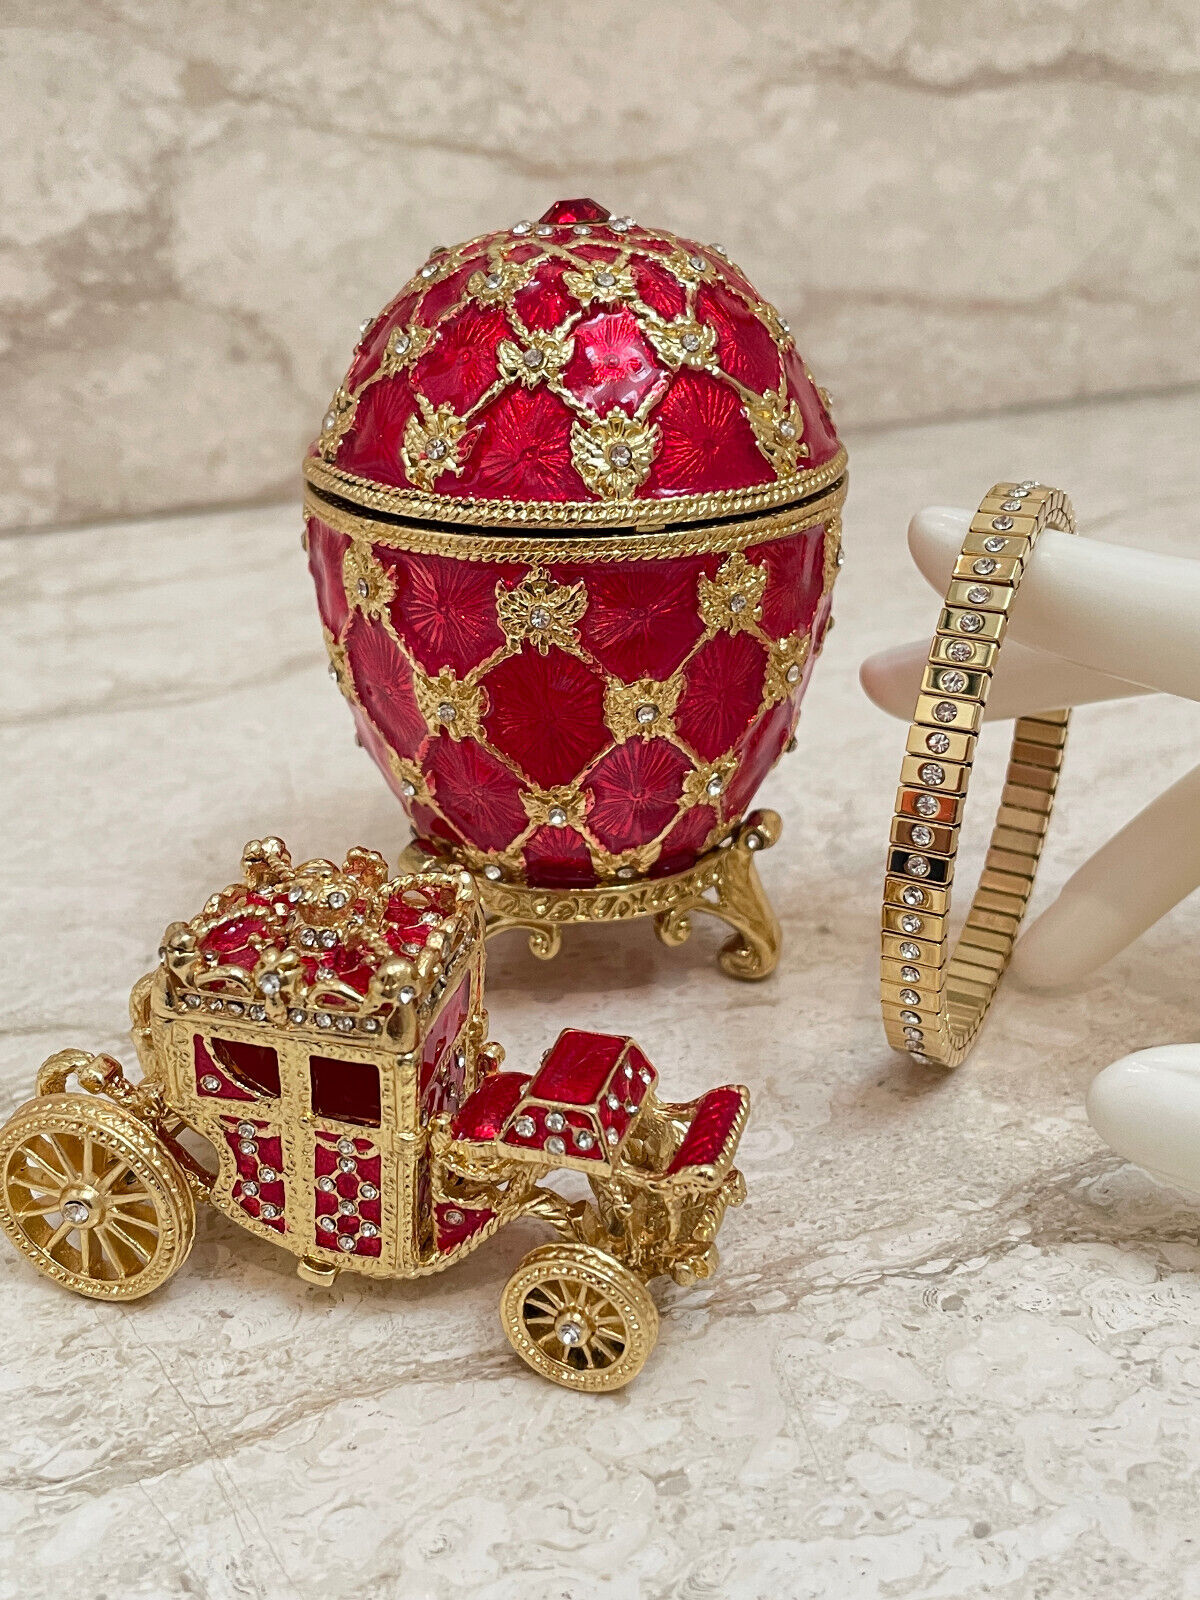 Handmade Emperor Faberge egg Imperial egg & Gold bracelet Husband gift Fabergé